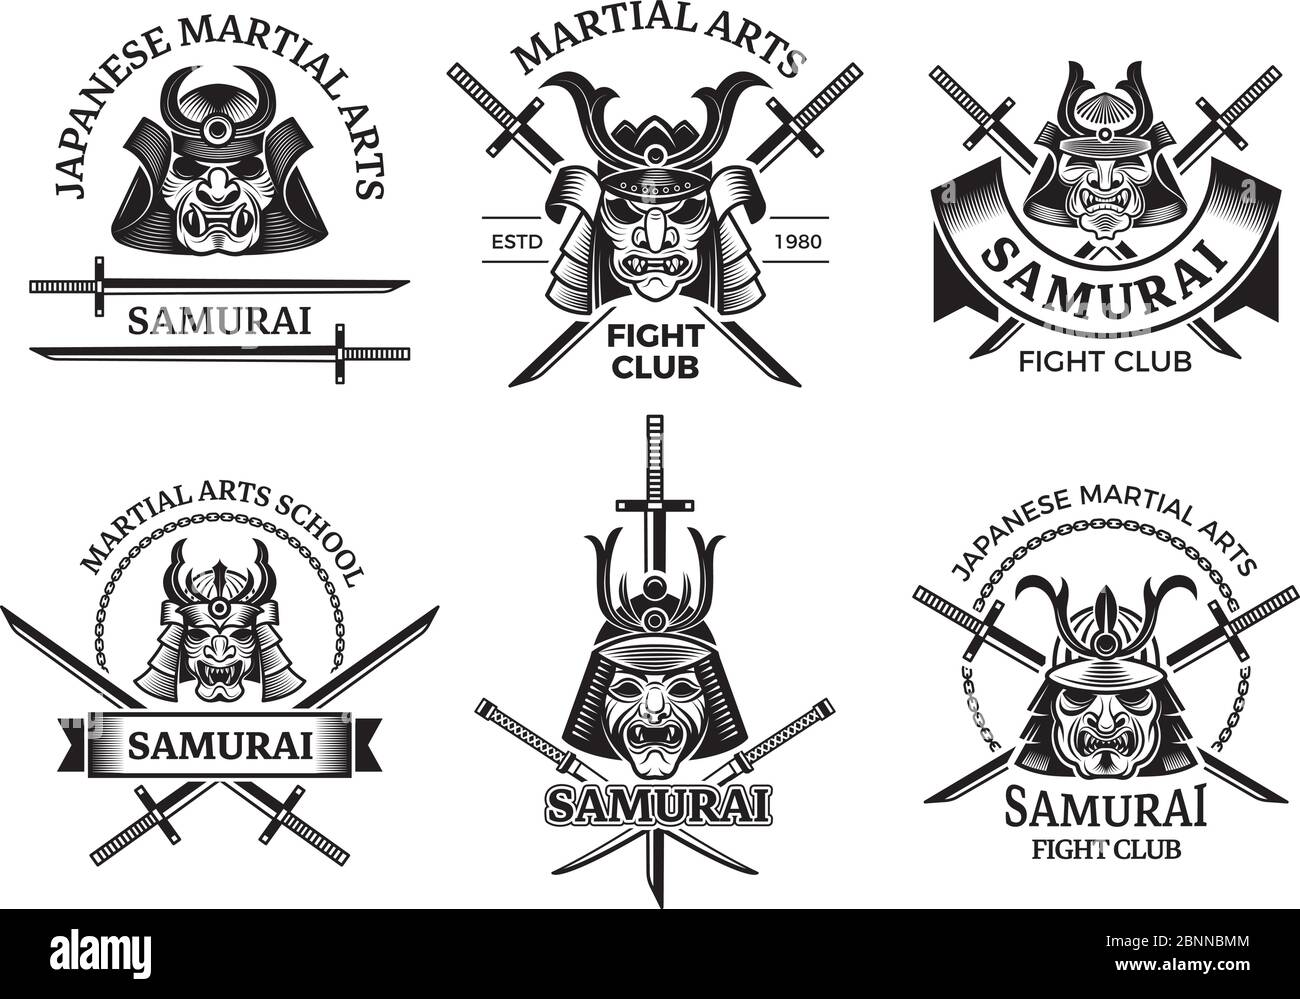 Étiquettes d'asie martiale. Samouraï agressive masques guerriers et épée katana vecteur étiquettes logo ou tatouage dessins Illustration de Vecteur